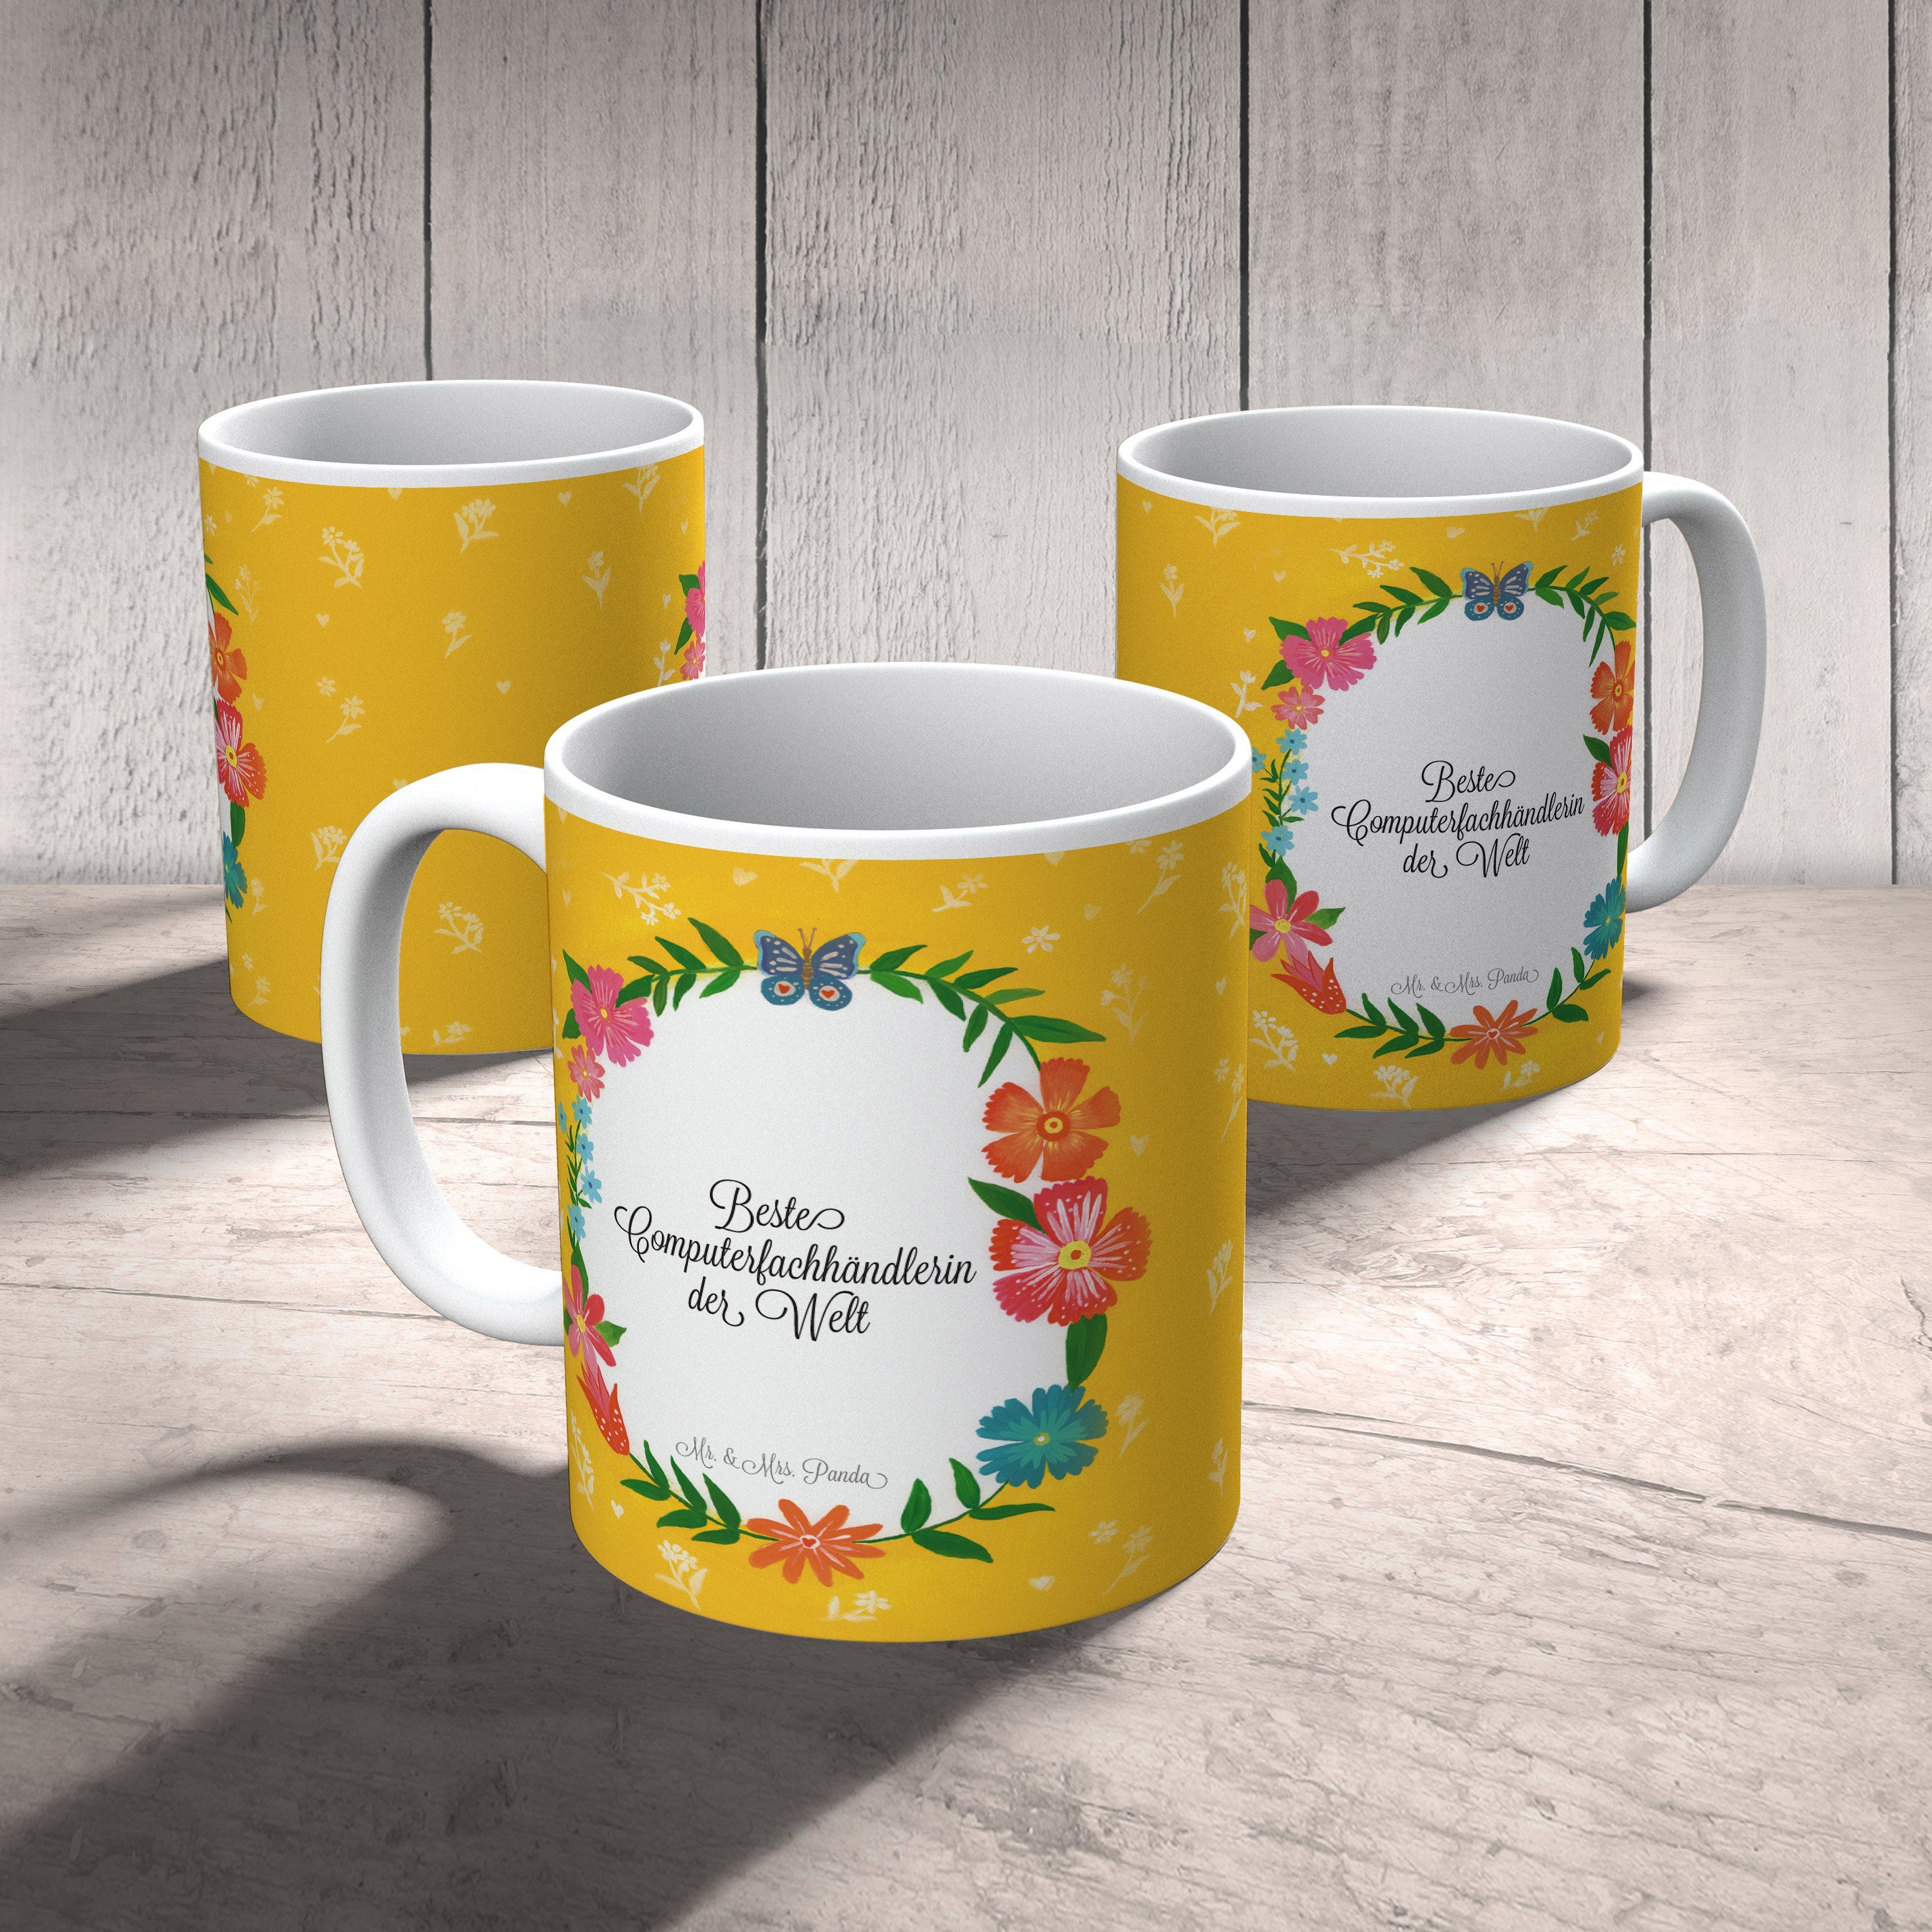 Mr. & Mrs. Panda Tasse Keramik Teetasse, Abschied, Geschenk, Geschenk Tasse, Computerfachhändlerin 